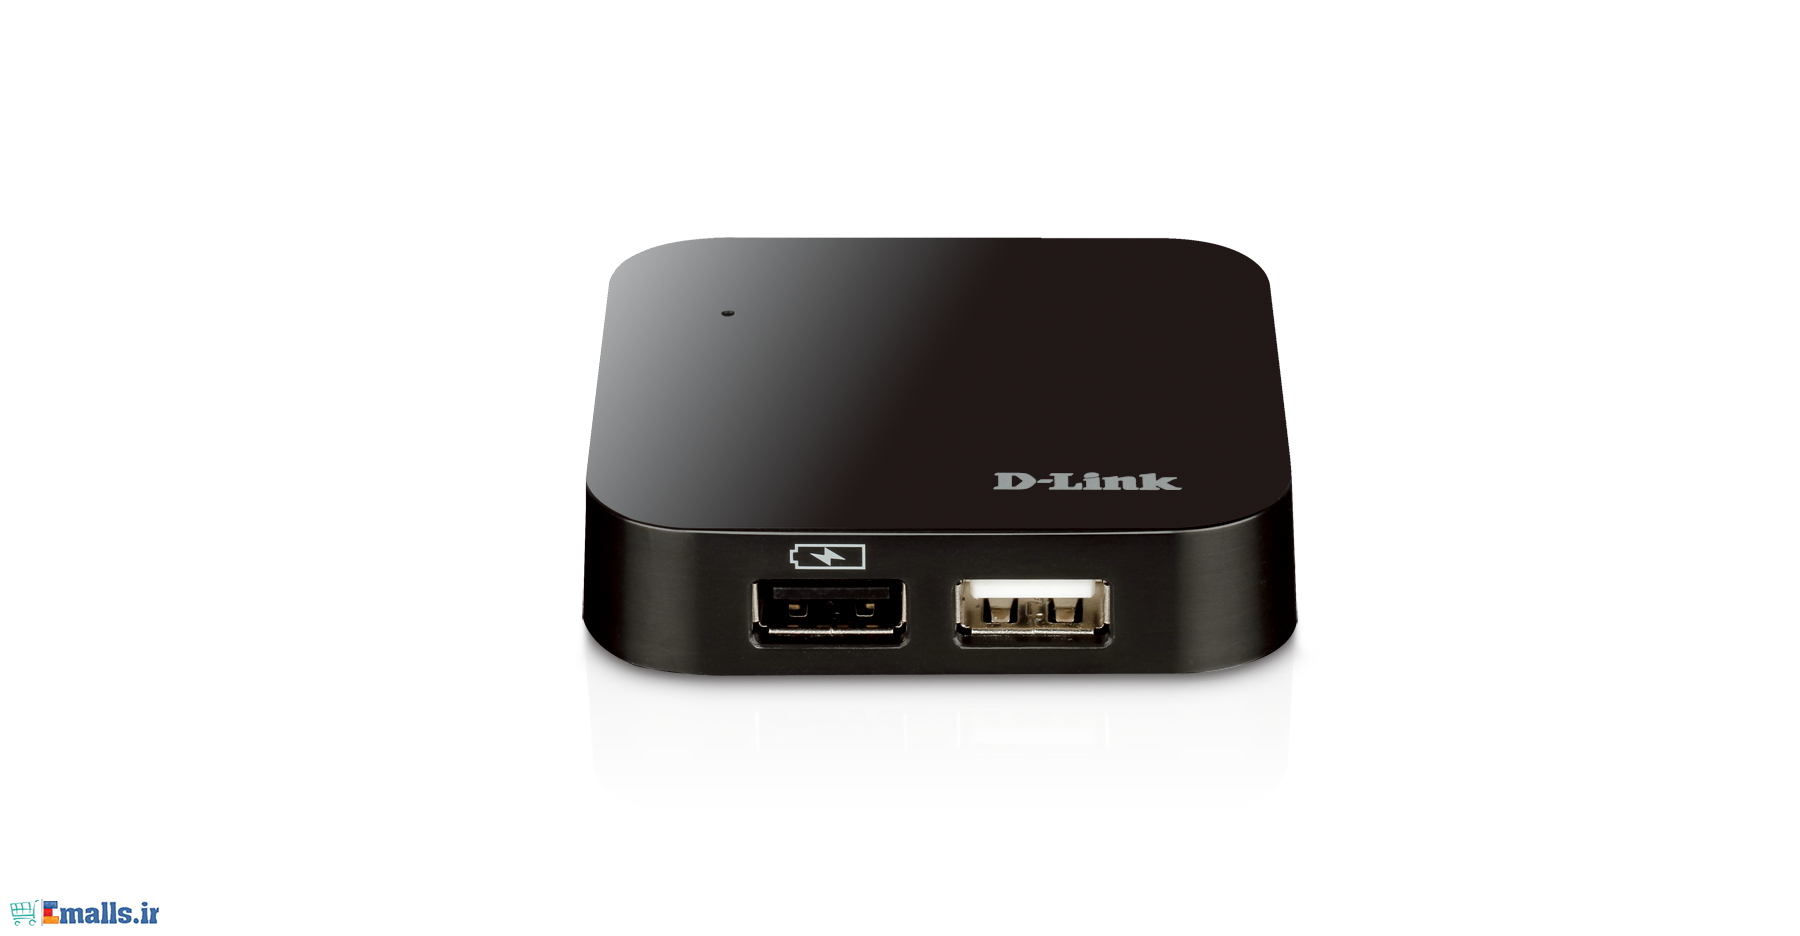 هاب یو اس بی 4 پورت دی-لینک مدل DUB-H4 D-Link 4-Port USB 2.0 Hub DUB-H4